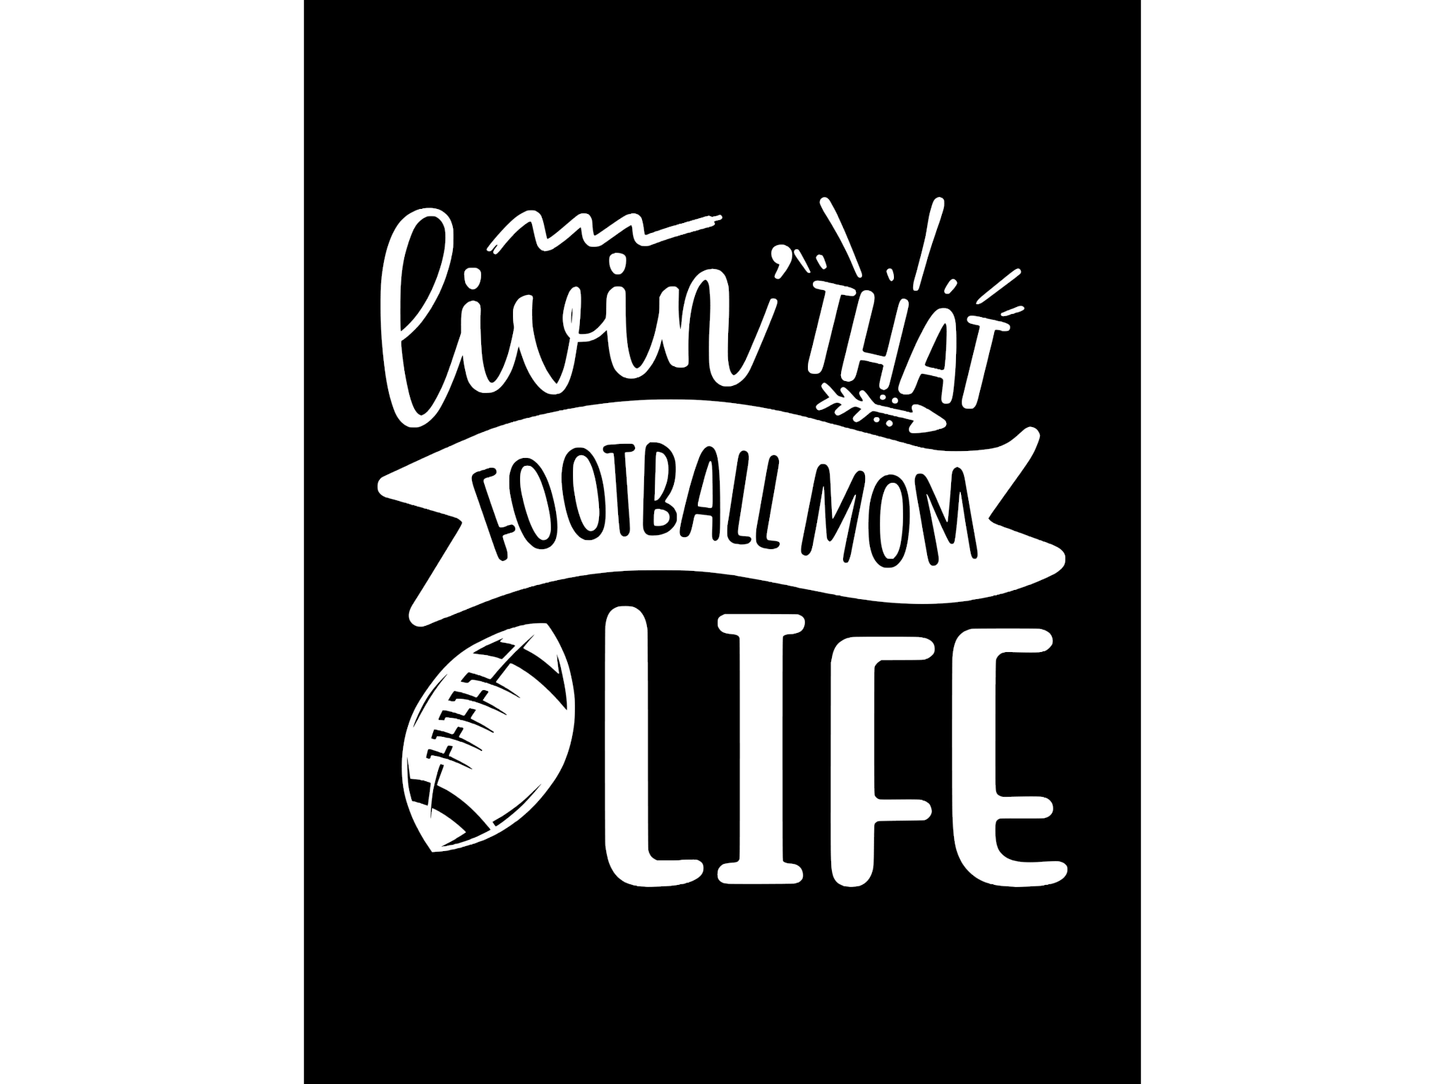 Livin That Football Mom Life T-shirt or Sweatshirt